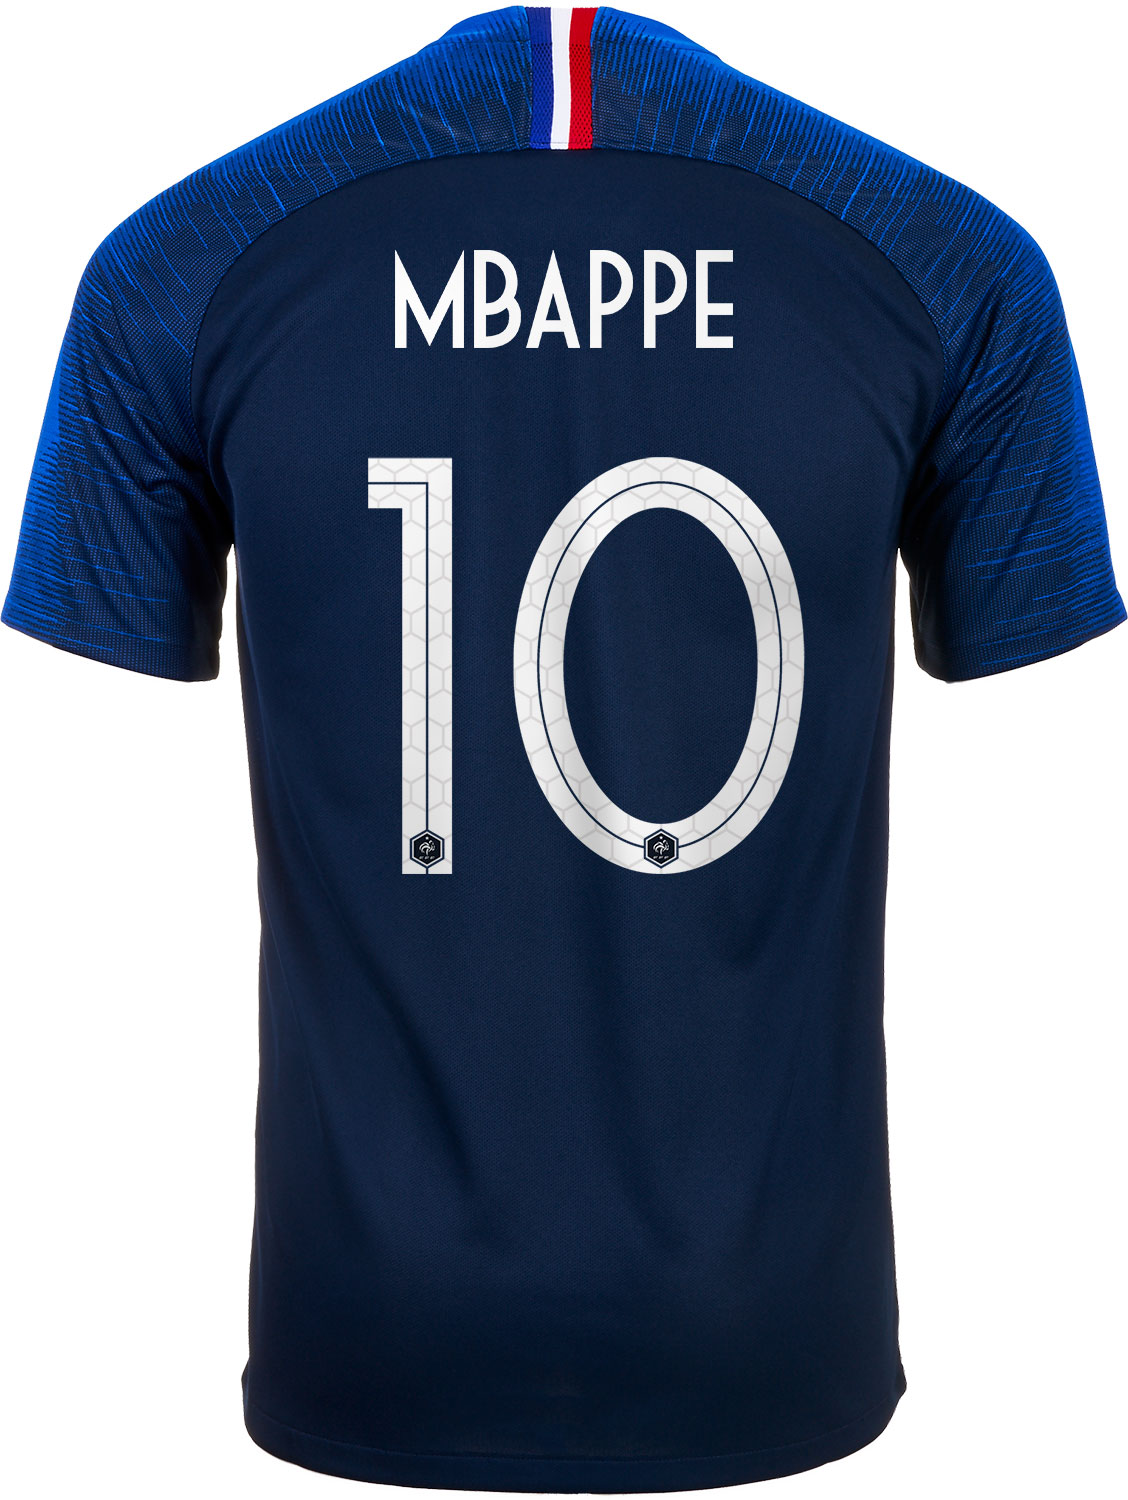 mbappe france jersey 2018